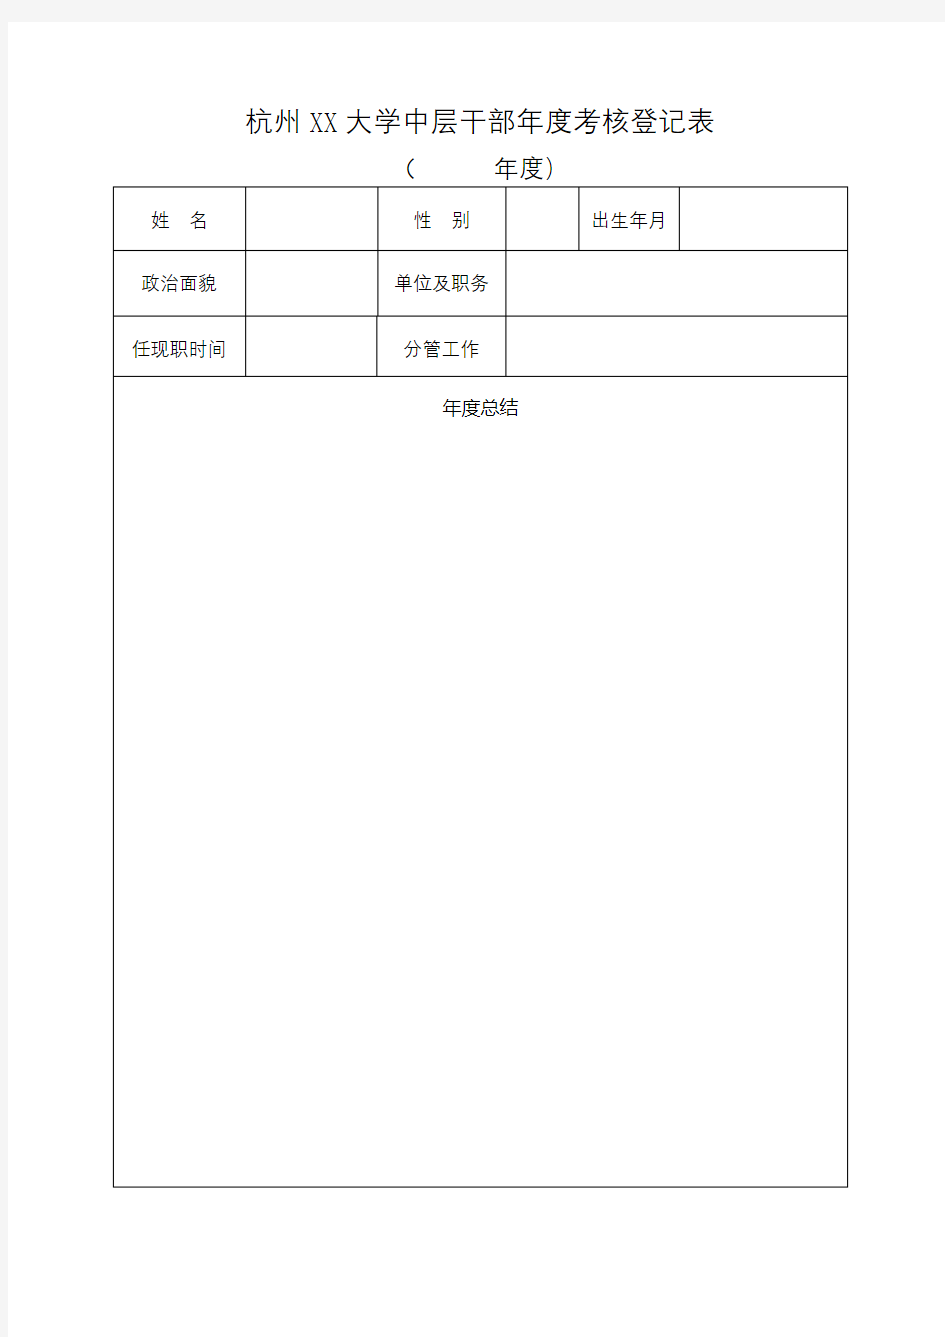 杭州电子科技大学中层干部年度考核登记表【模板】